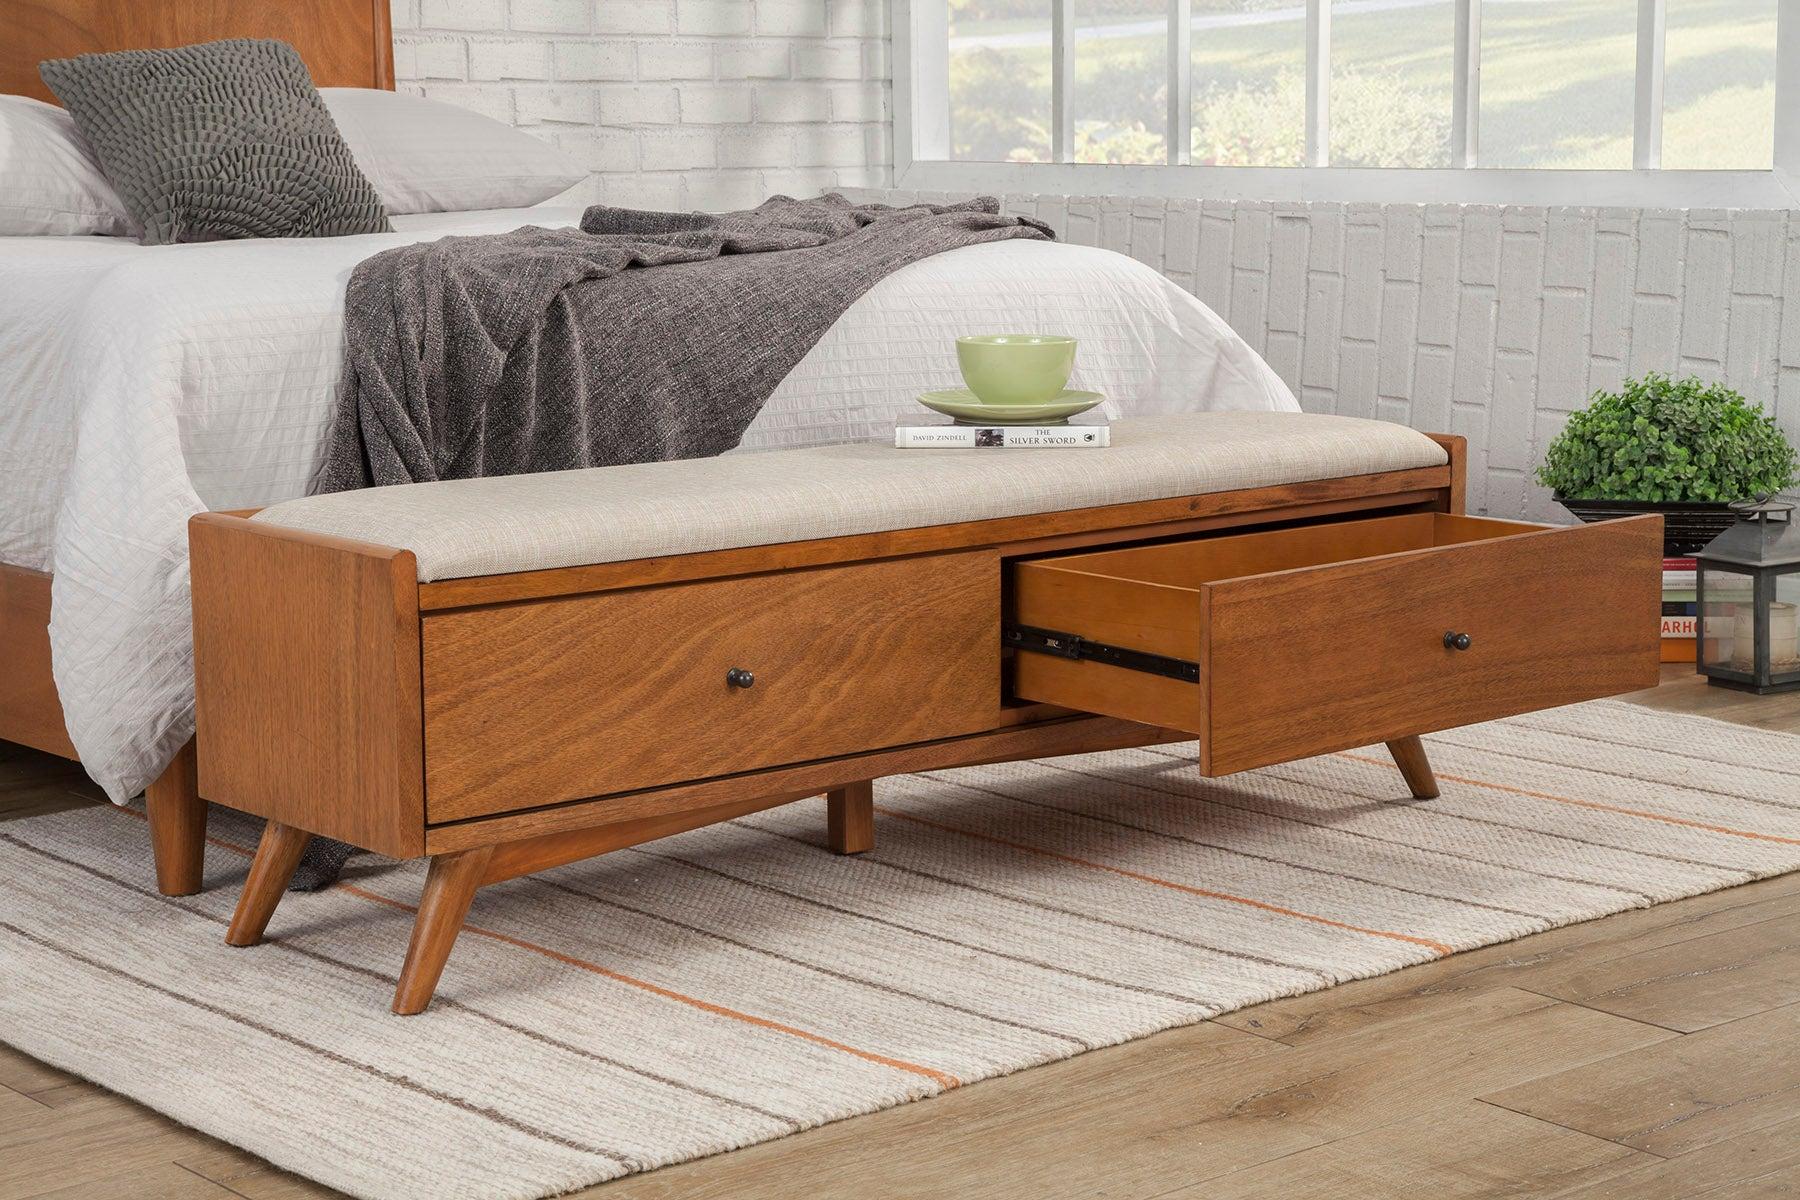 

    
966-07EK-Set-3-Bench Alpine Furniture Panel Bedroom Set
